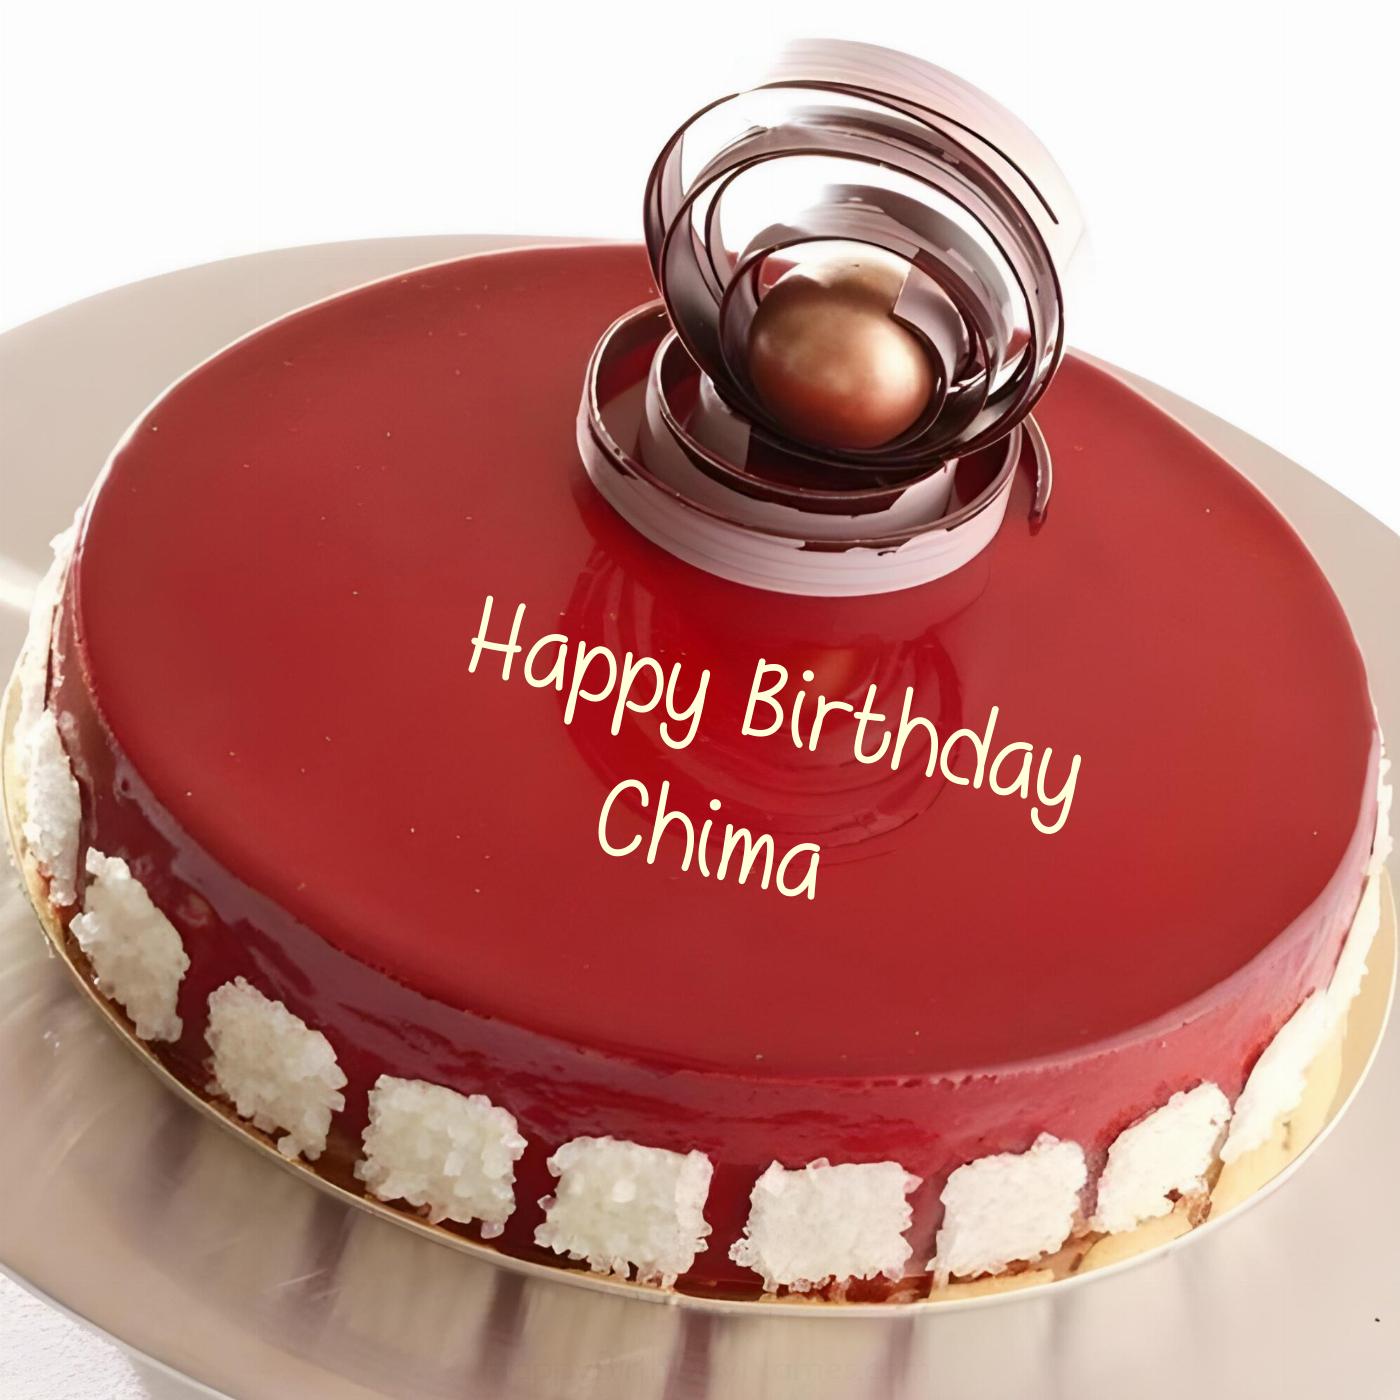 Happy Birthday Chima Beautiful Red Cake